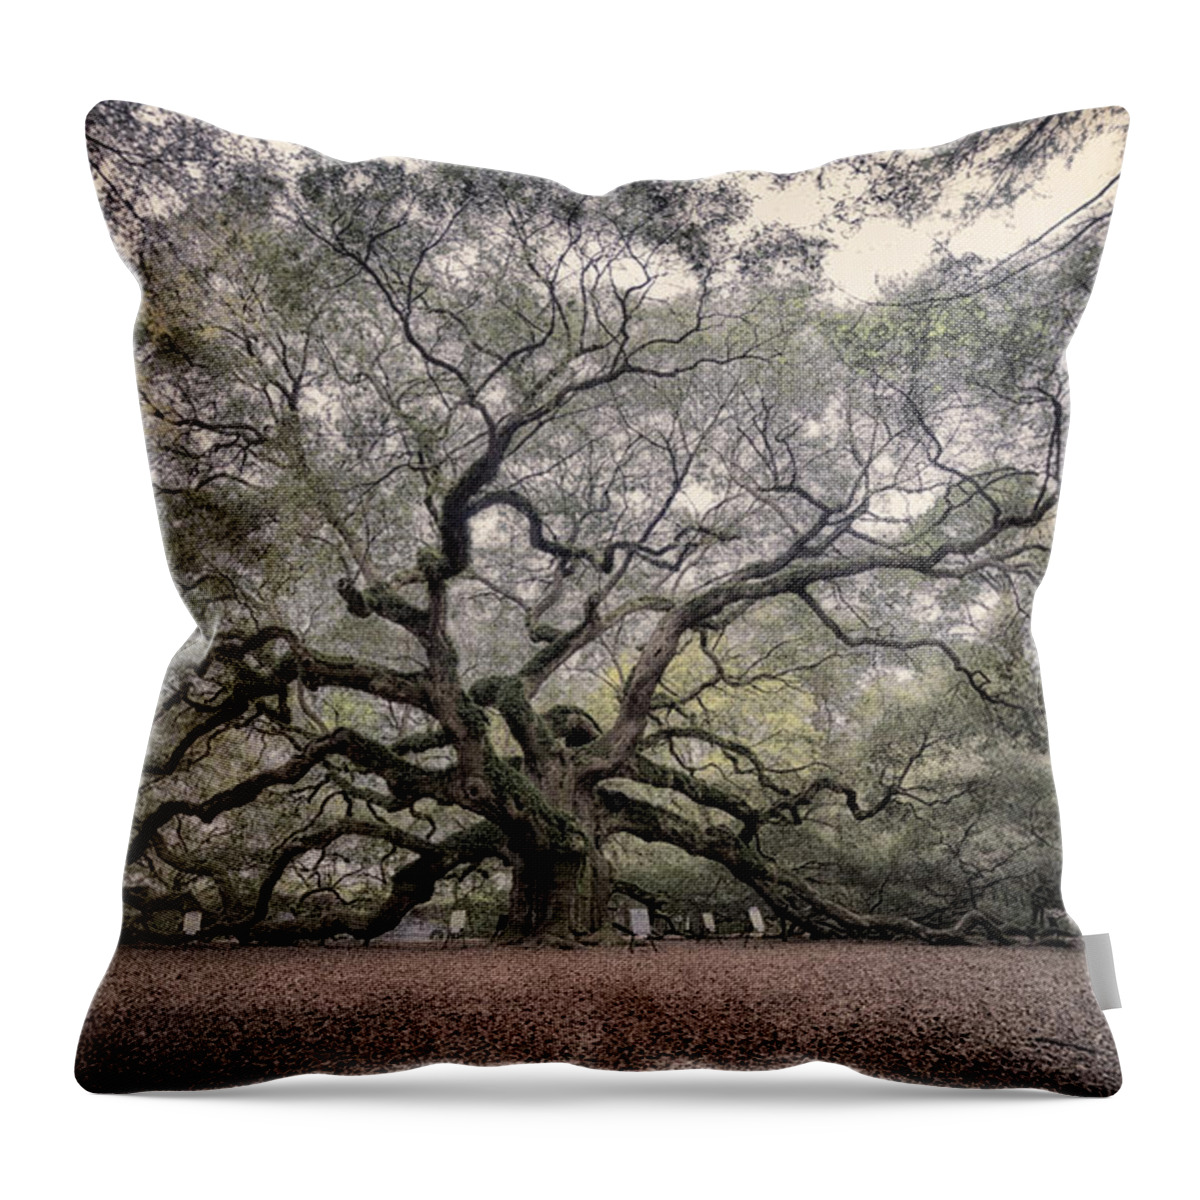 South Carolina Throw Pillow featuring the photograph Angel Oak by Robert Fawcett